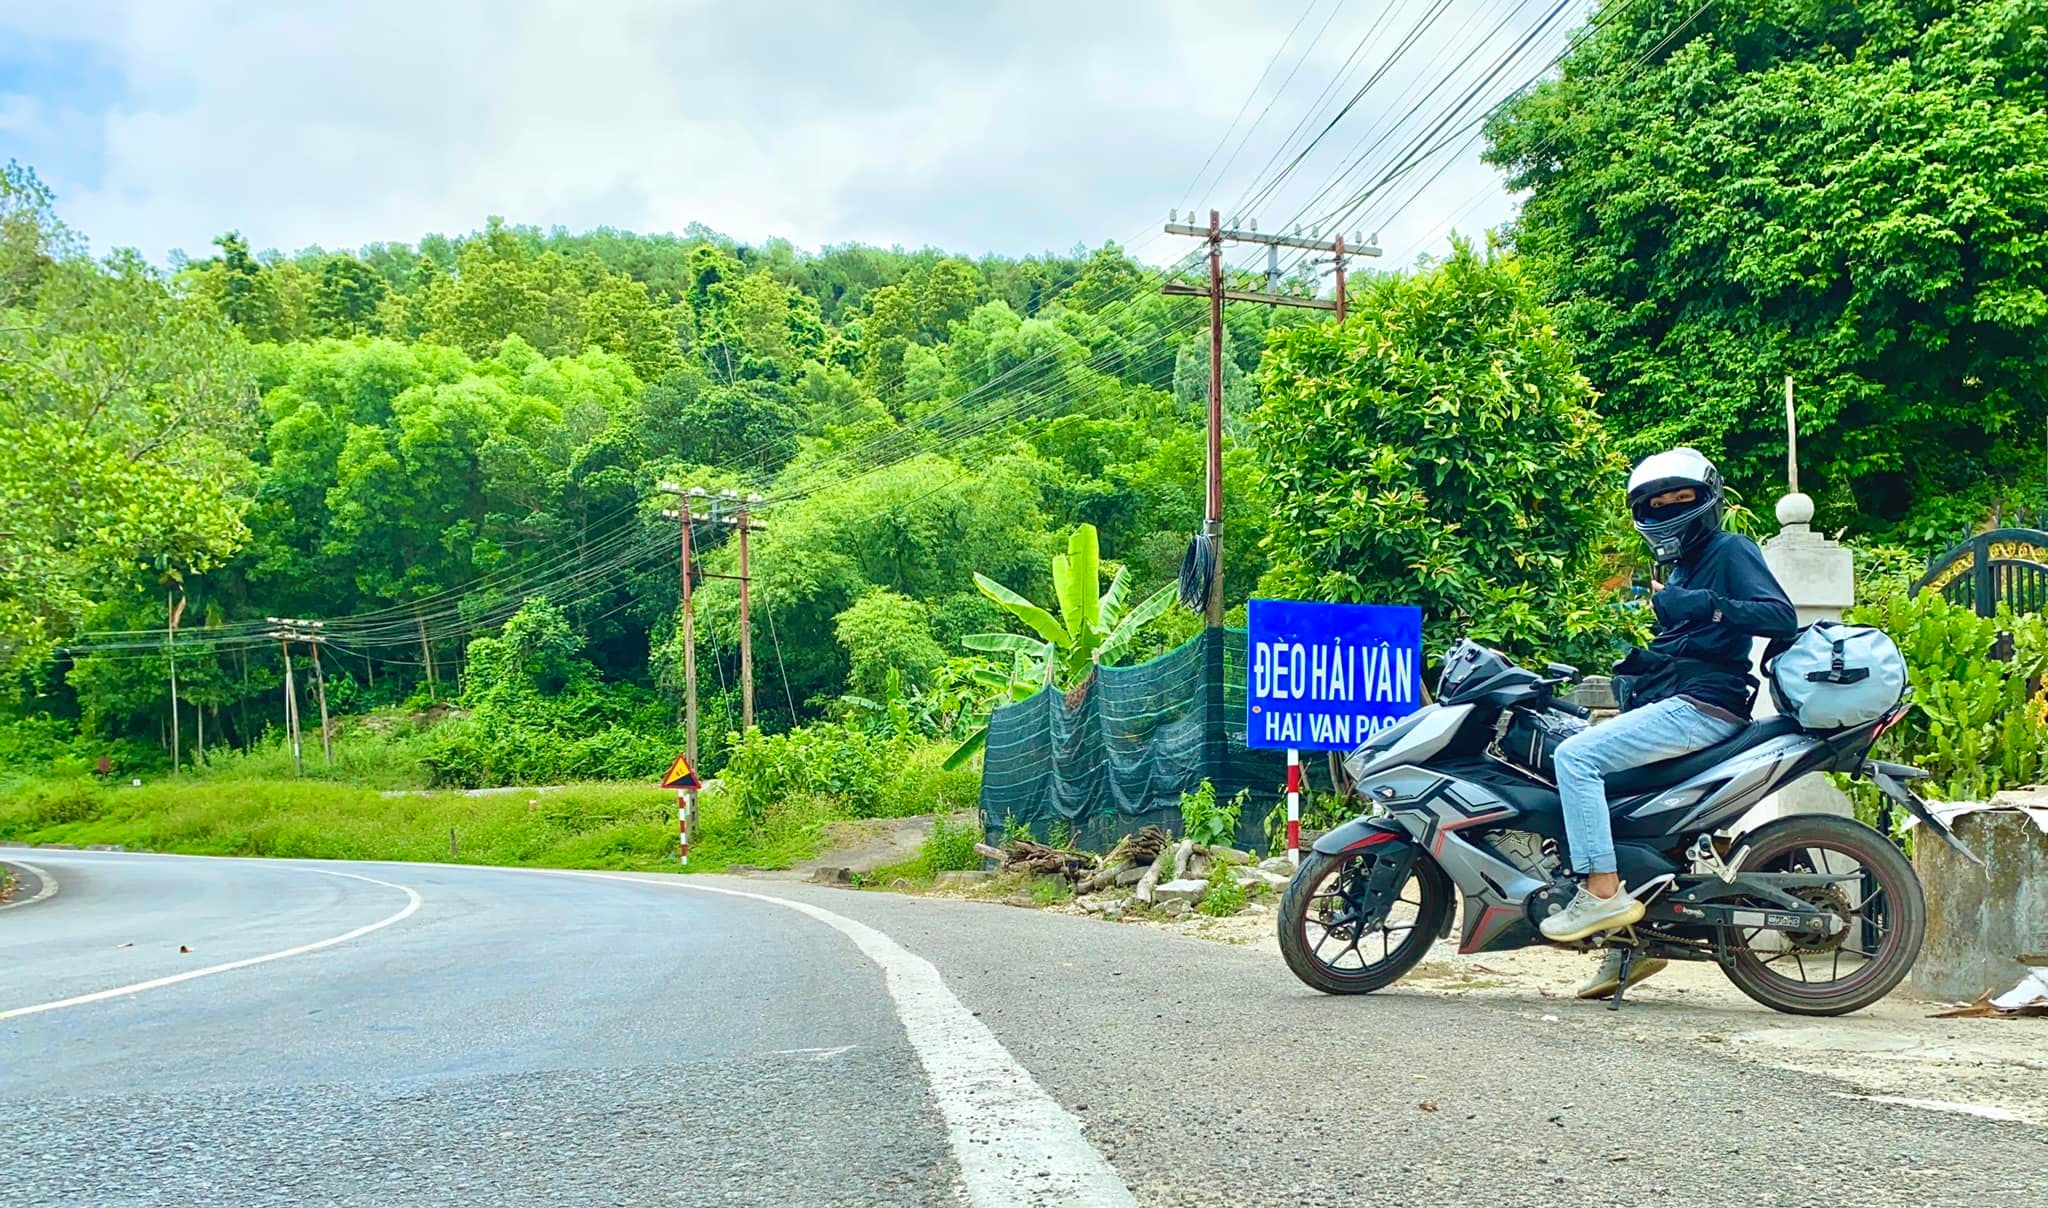 Rong ruổi xe máy Việt Nam: Điều gì khiến người ta yêu thích việc lái xe máy và rong ruổi trên những con đường Việt Nam? Đó chính là cảm giác tự do và sự trải nghiệm khác biệt. Với hình ảnh này, bạn sẽ được chiêm ngưỡng nét đặc trưng của người Việt và phong cách sống độc đáo.